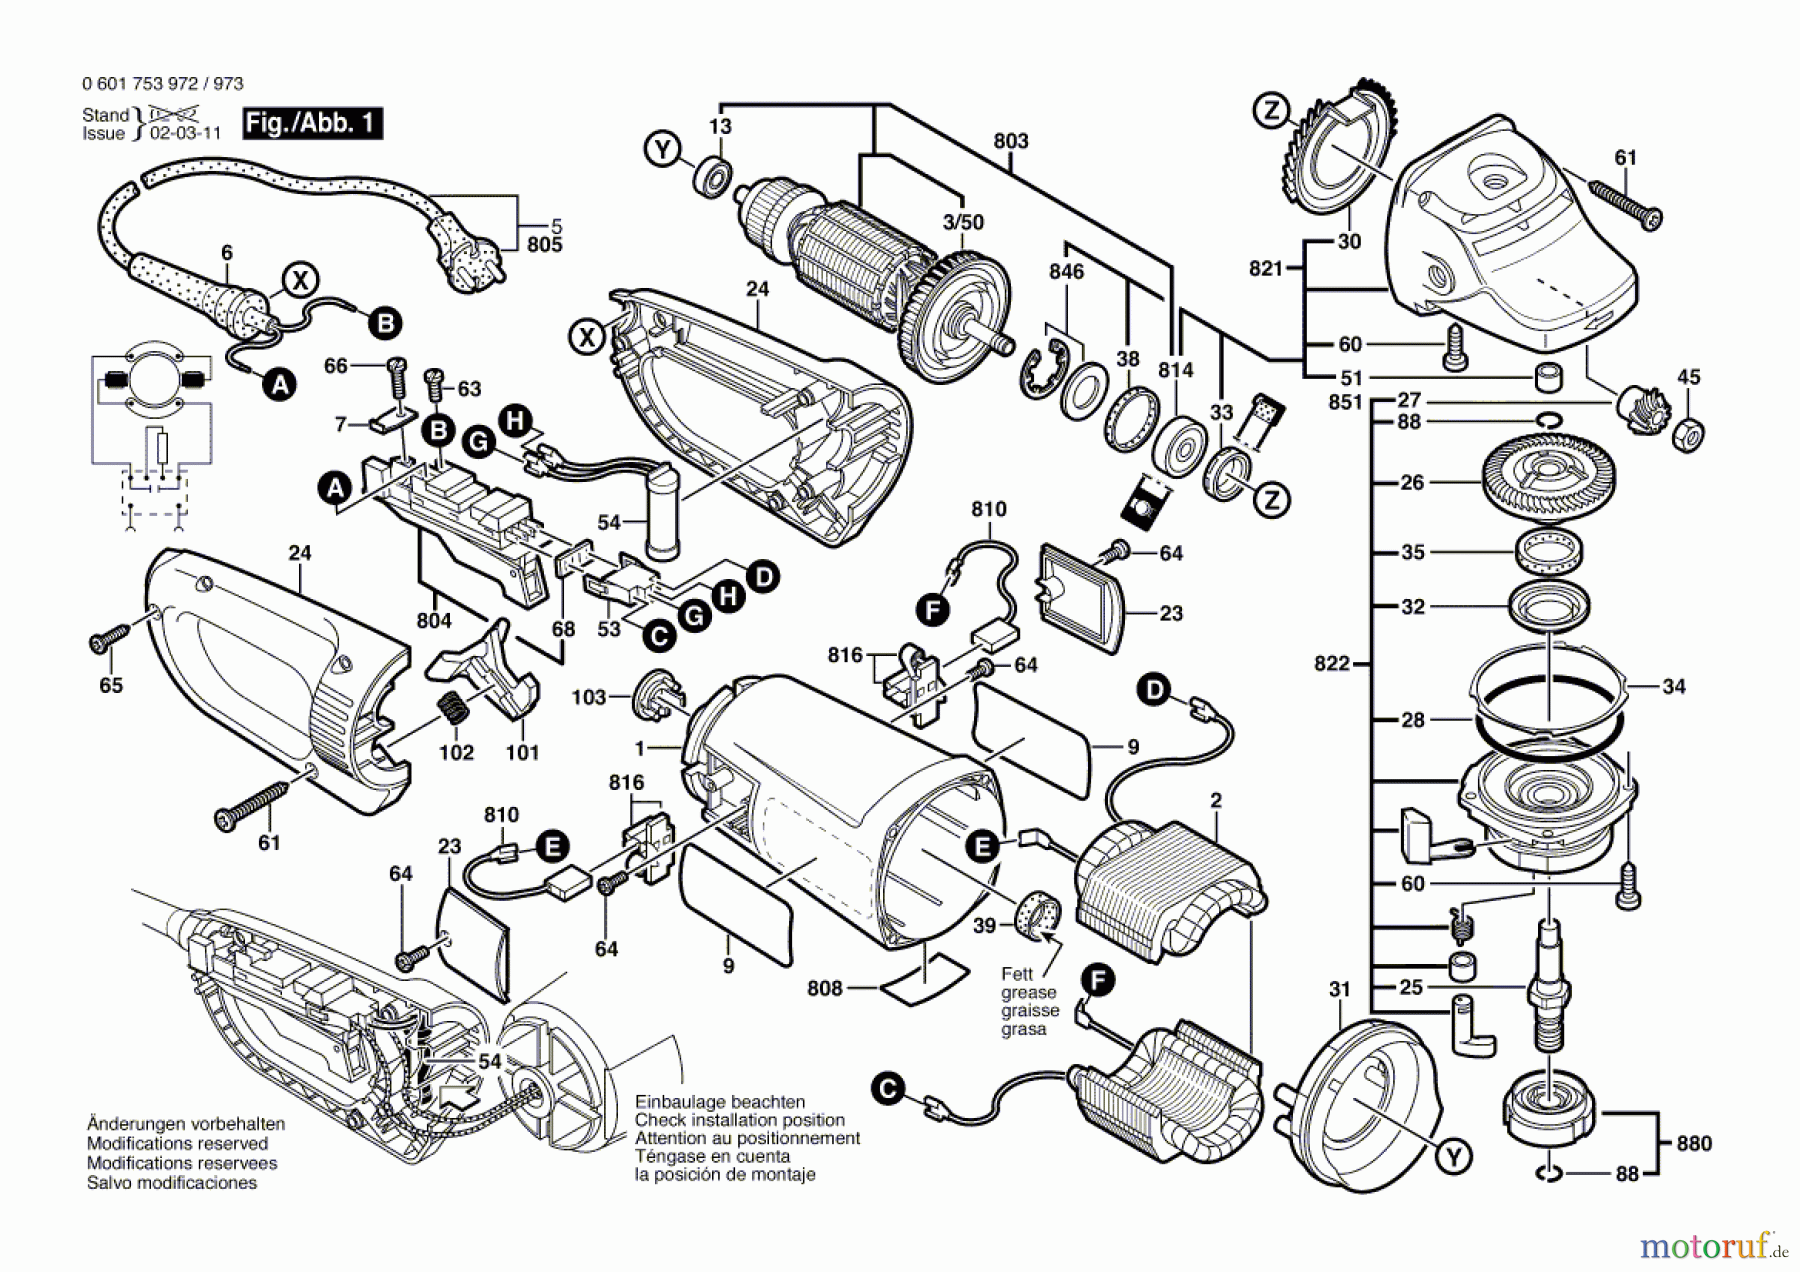  Bosch Werkzeug Winkelschleifer GWS 23-180 JS Seite 1